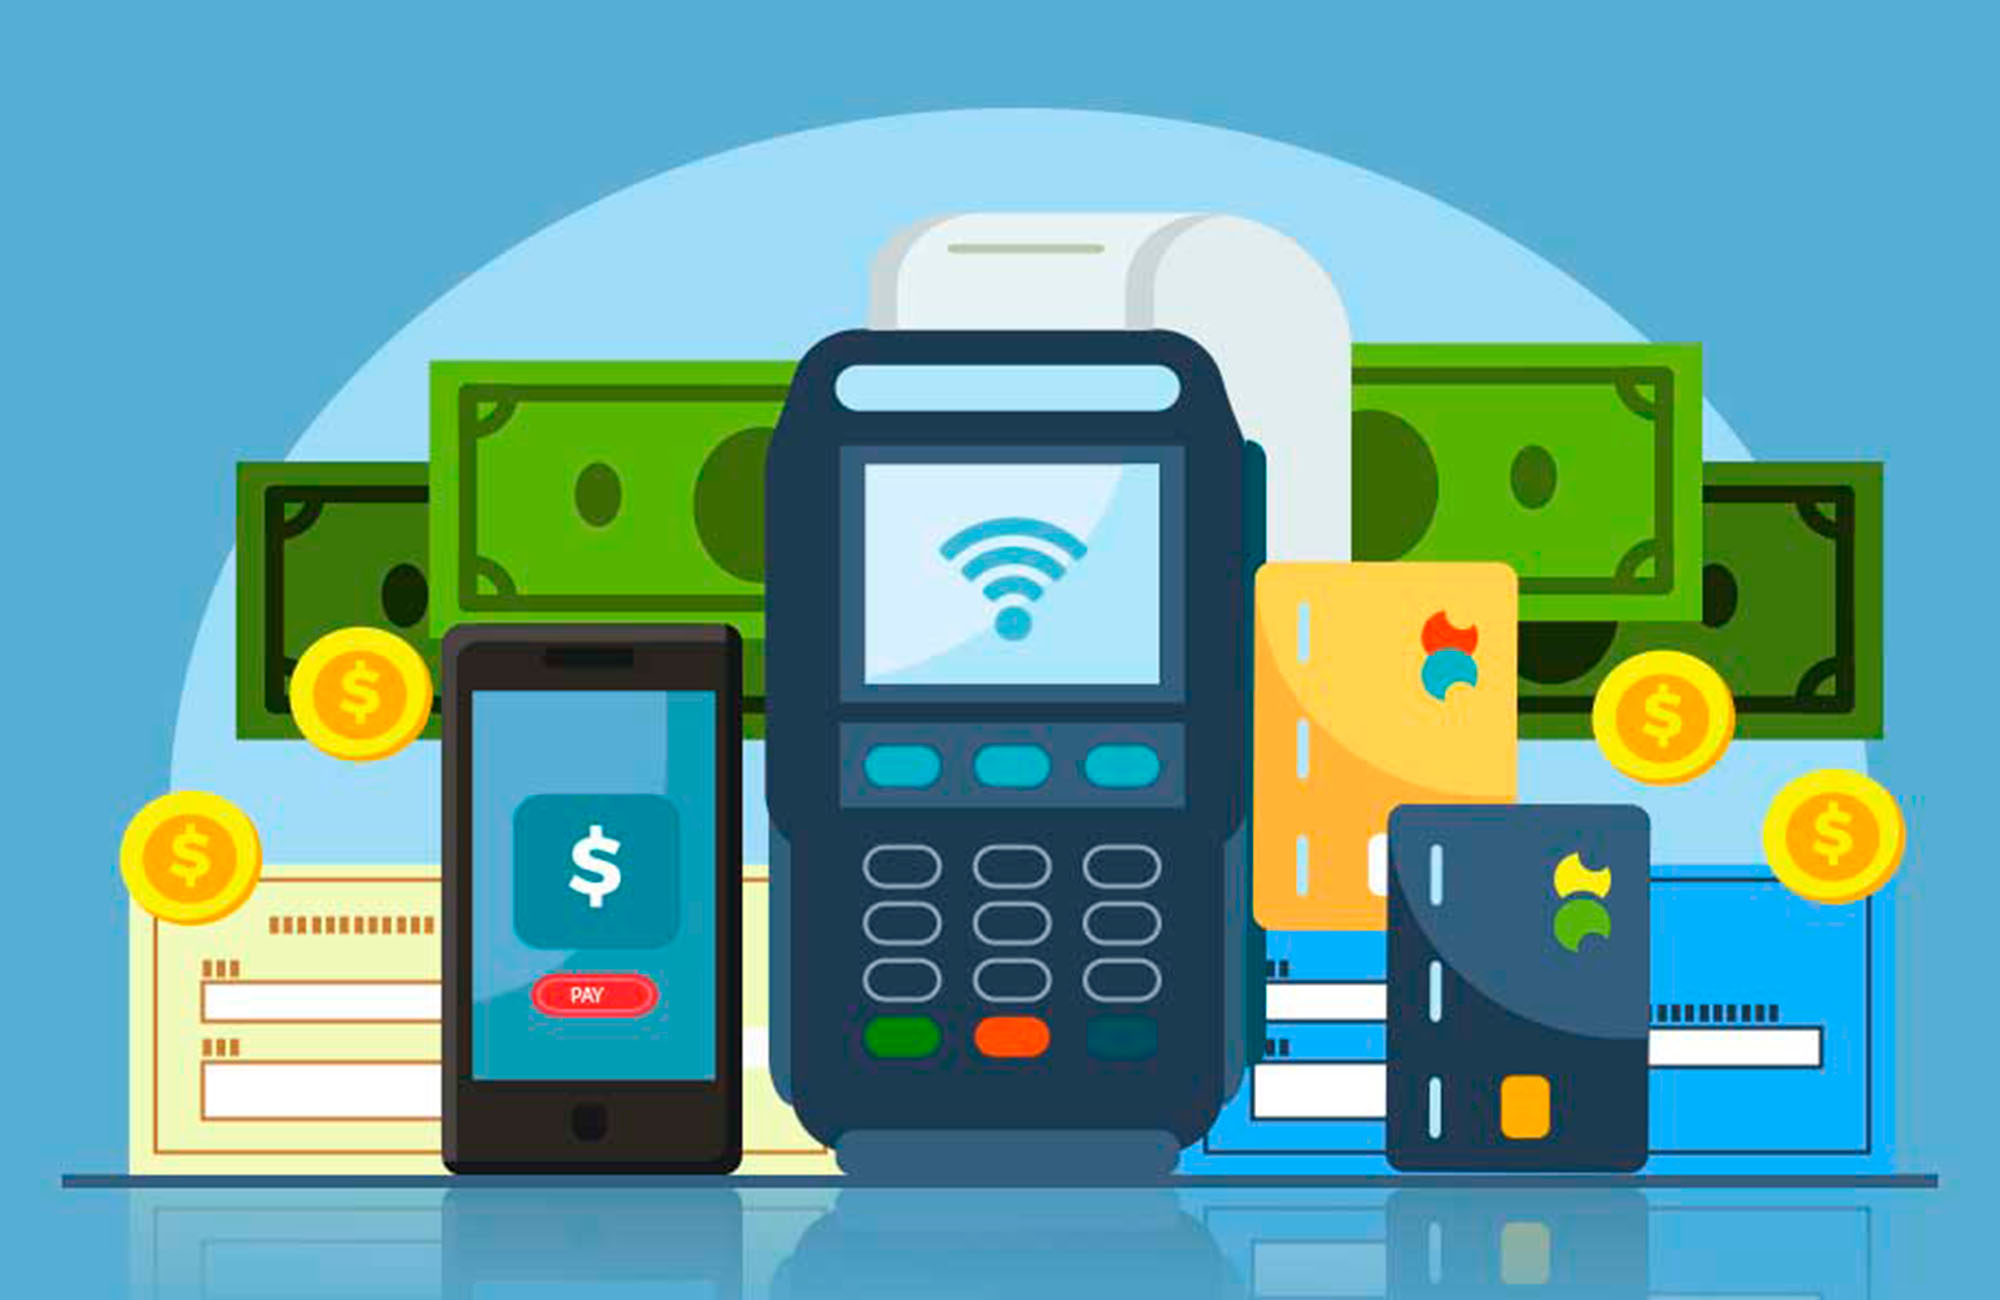 Pay method. Платежная система иллюстрации. Payment method. Лучшие платежные системы для смартфона. Глобальные платежные системы.